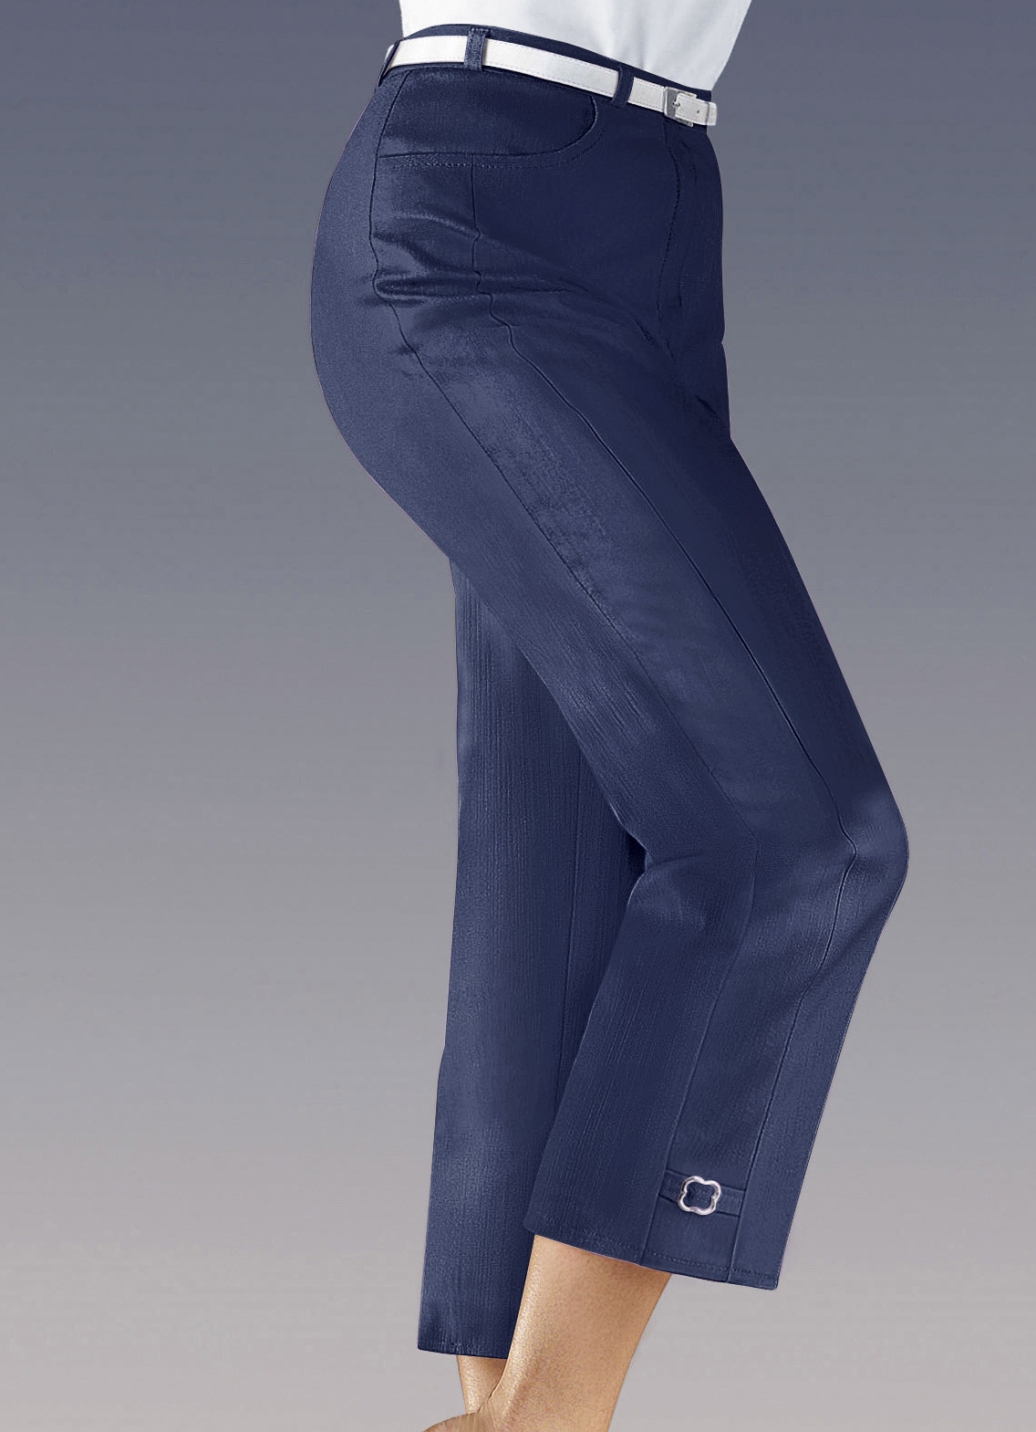 Hose in 7/8 Länge, Jeansblau, Größe 36 von KLAUS MODELLE